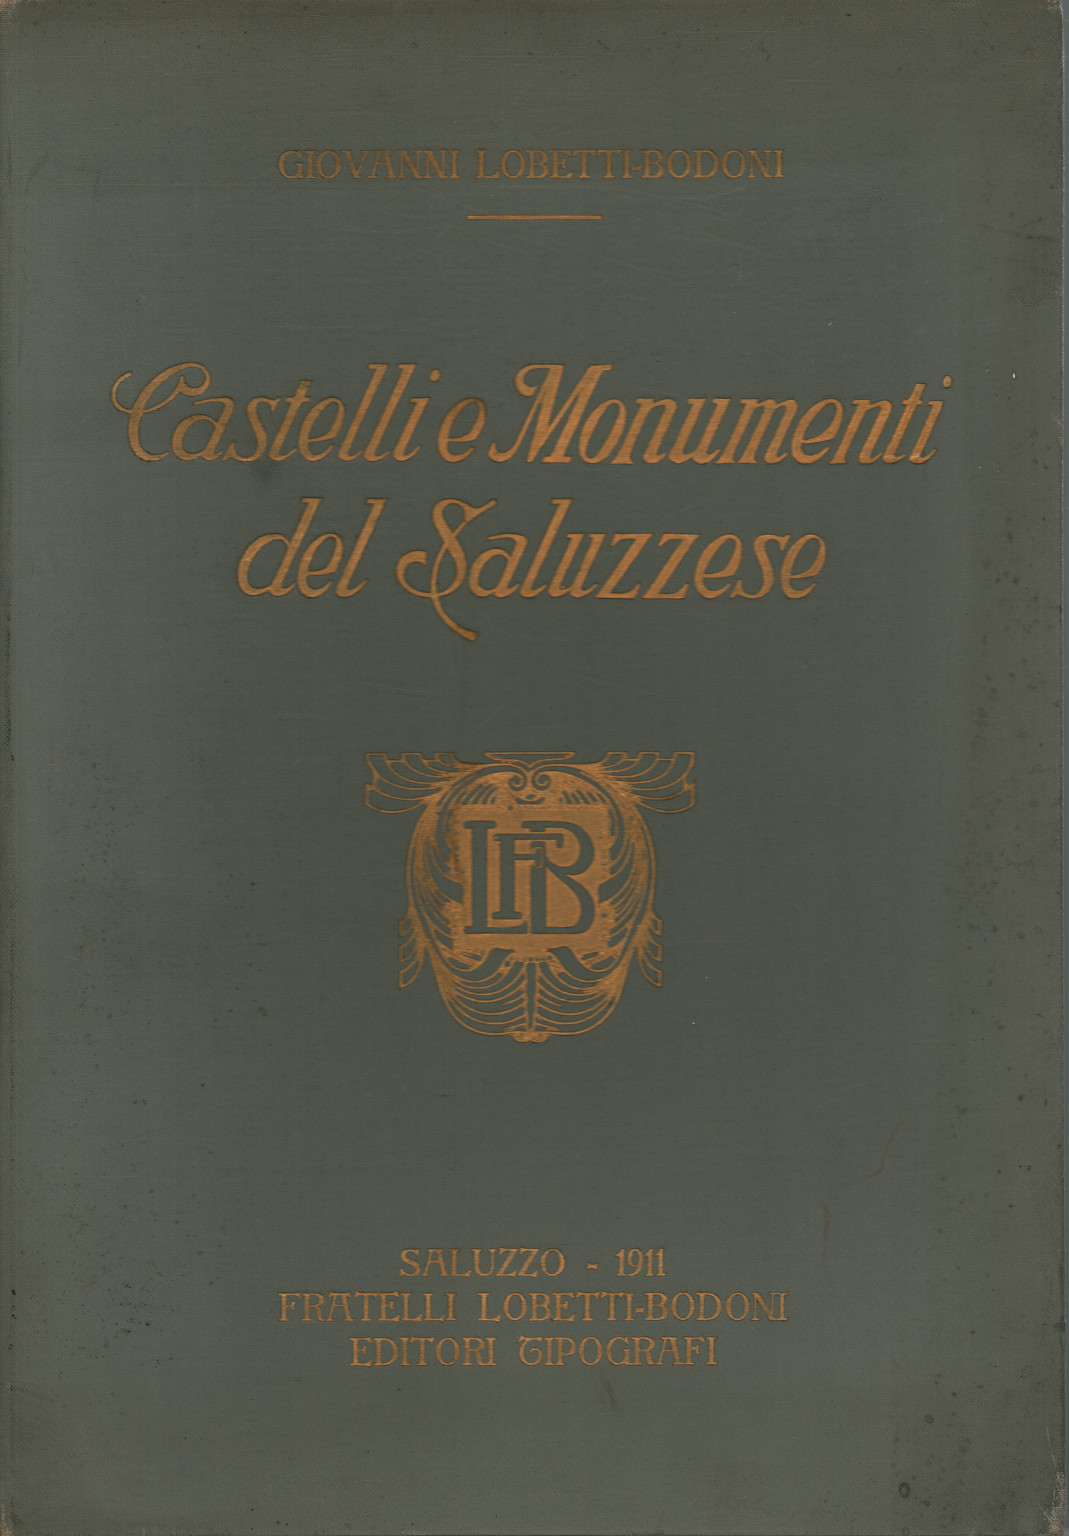 Castelli e Monumenti del Saluzzese, s.a.